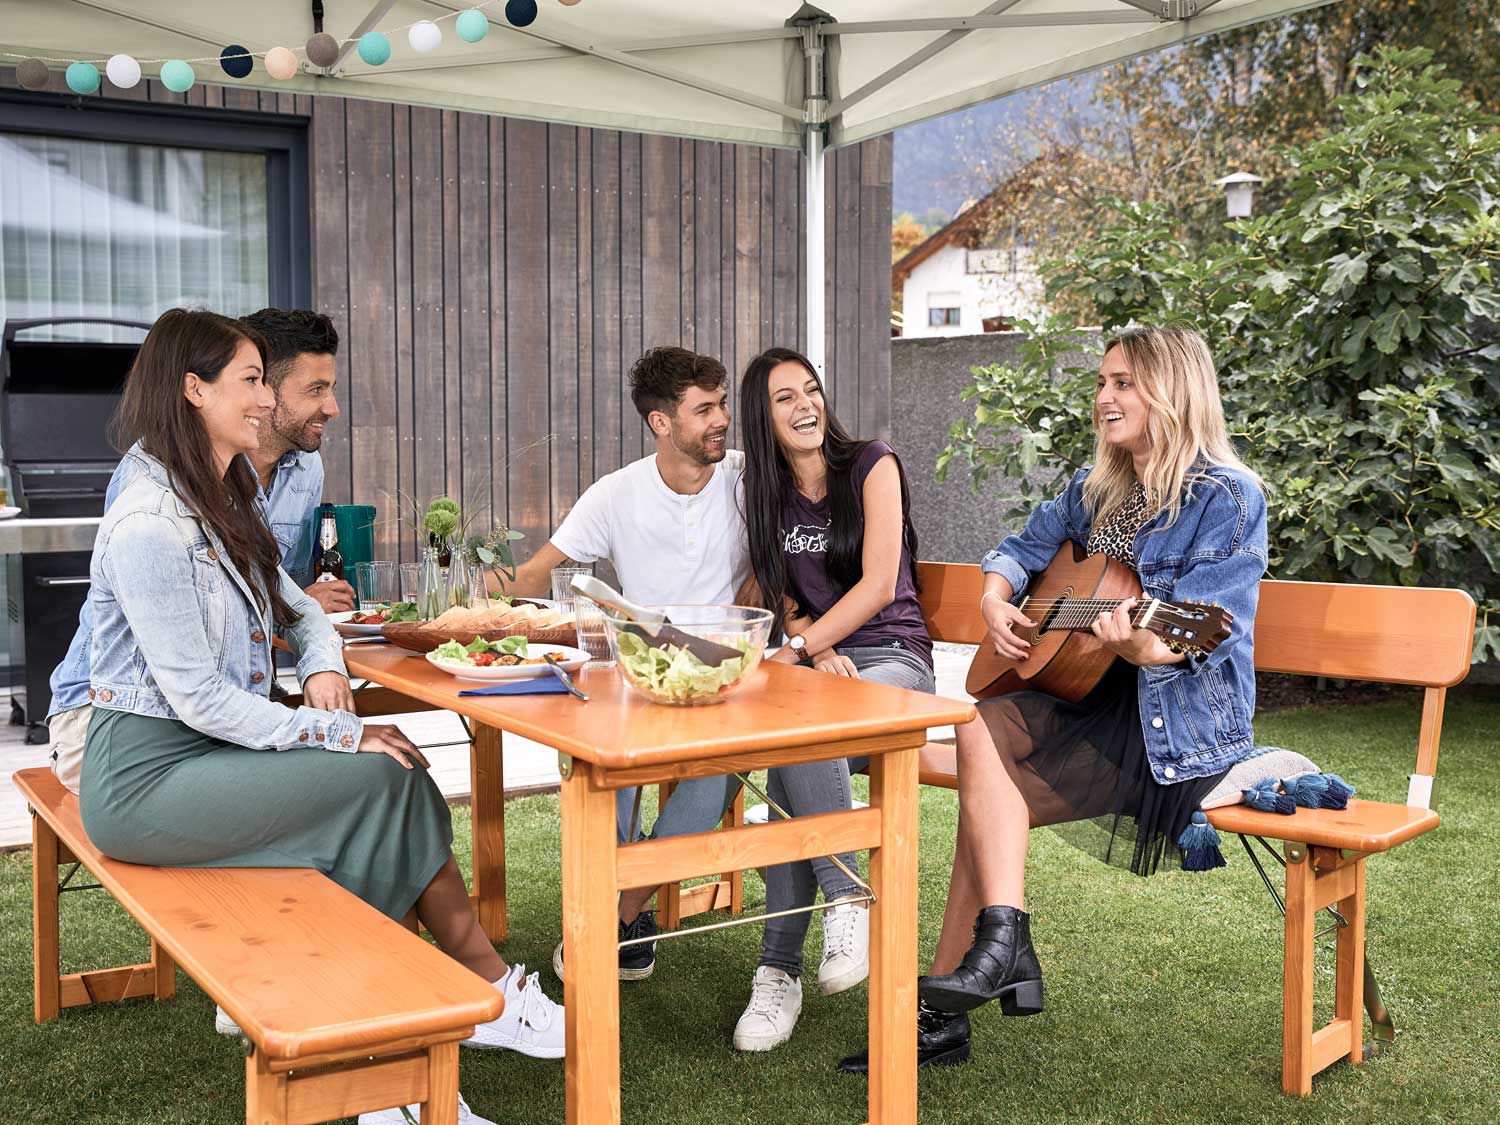 Quattro persone si godono la musica suonata da una donna con la chitarra e si siedono sul set Rustica nel giardino.